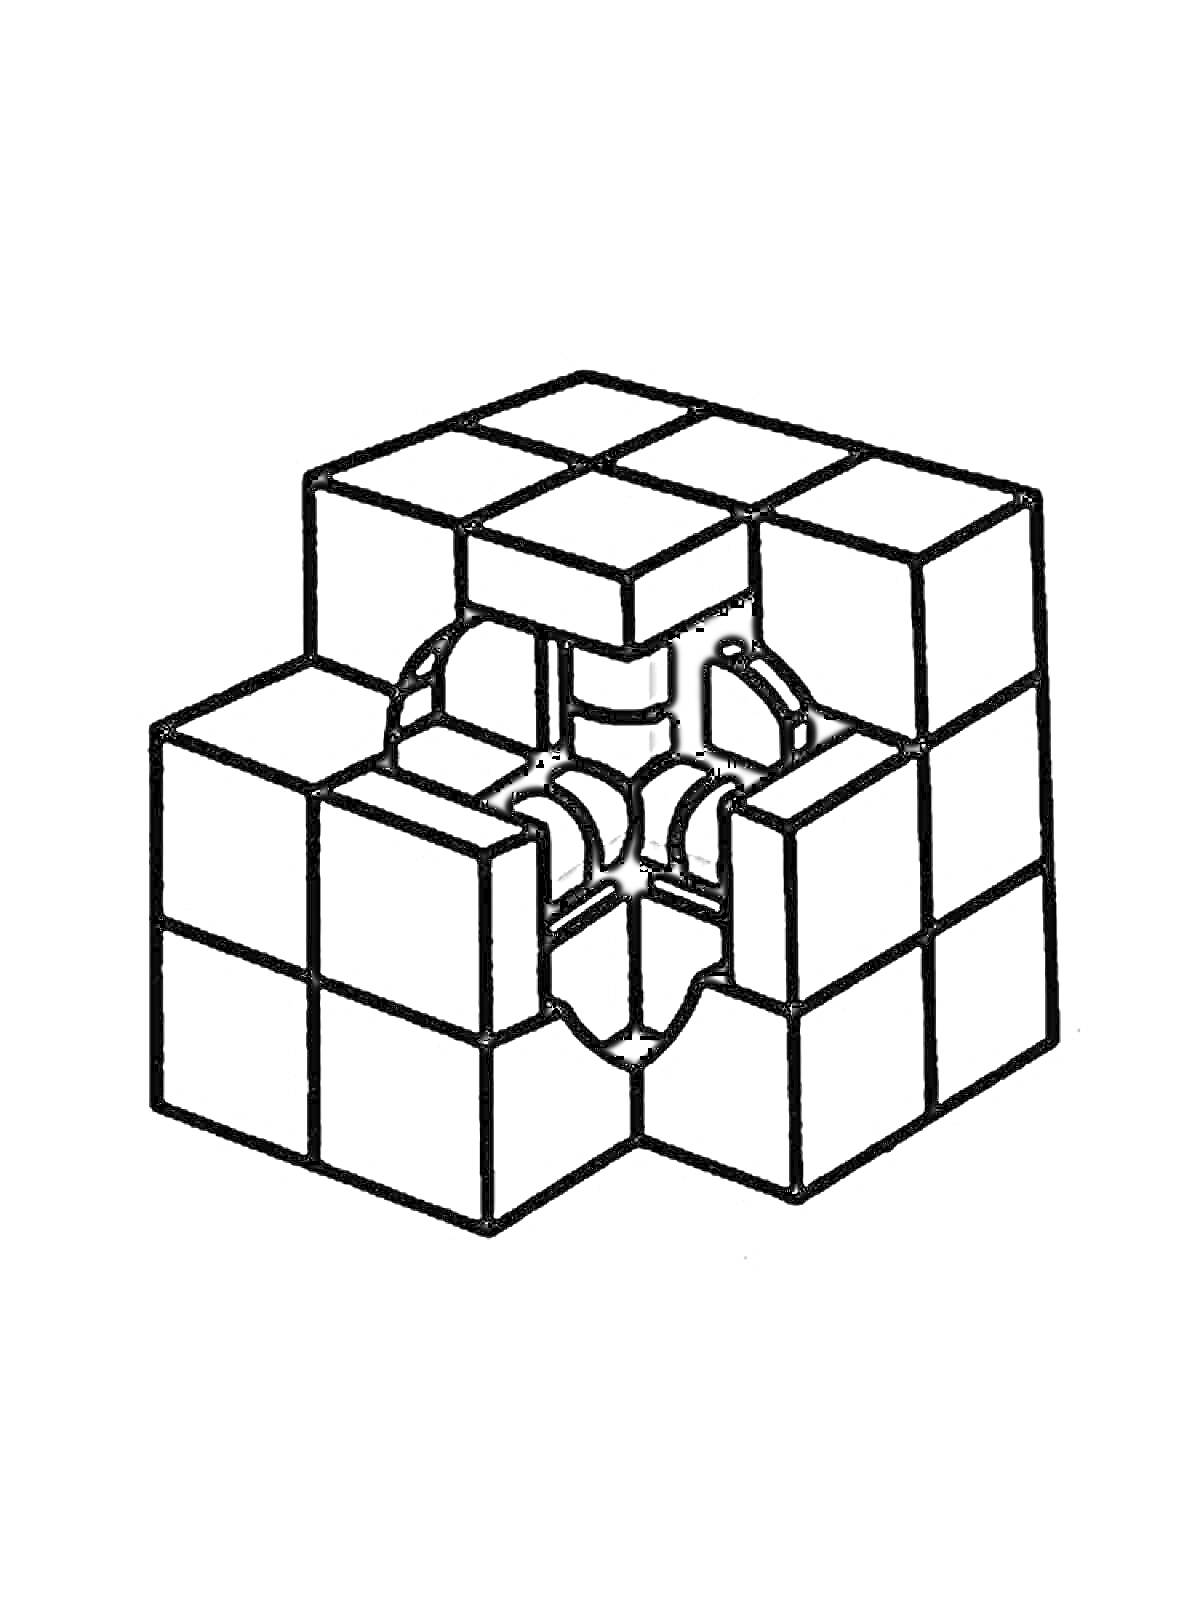 Раскраска Кубик Рубика с раскрытыми элементами внутренней конструкции